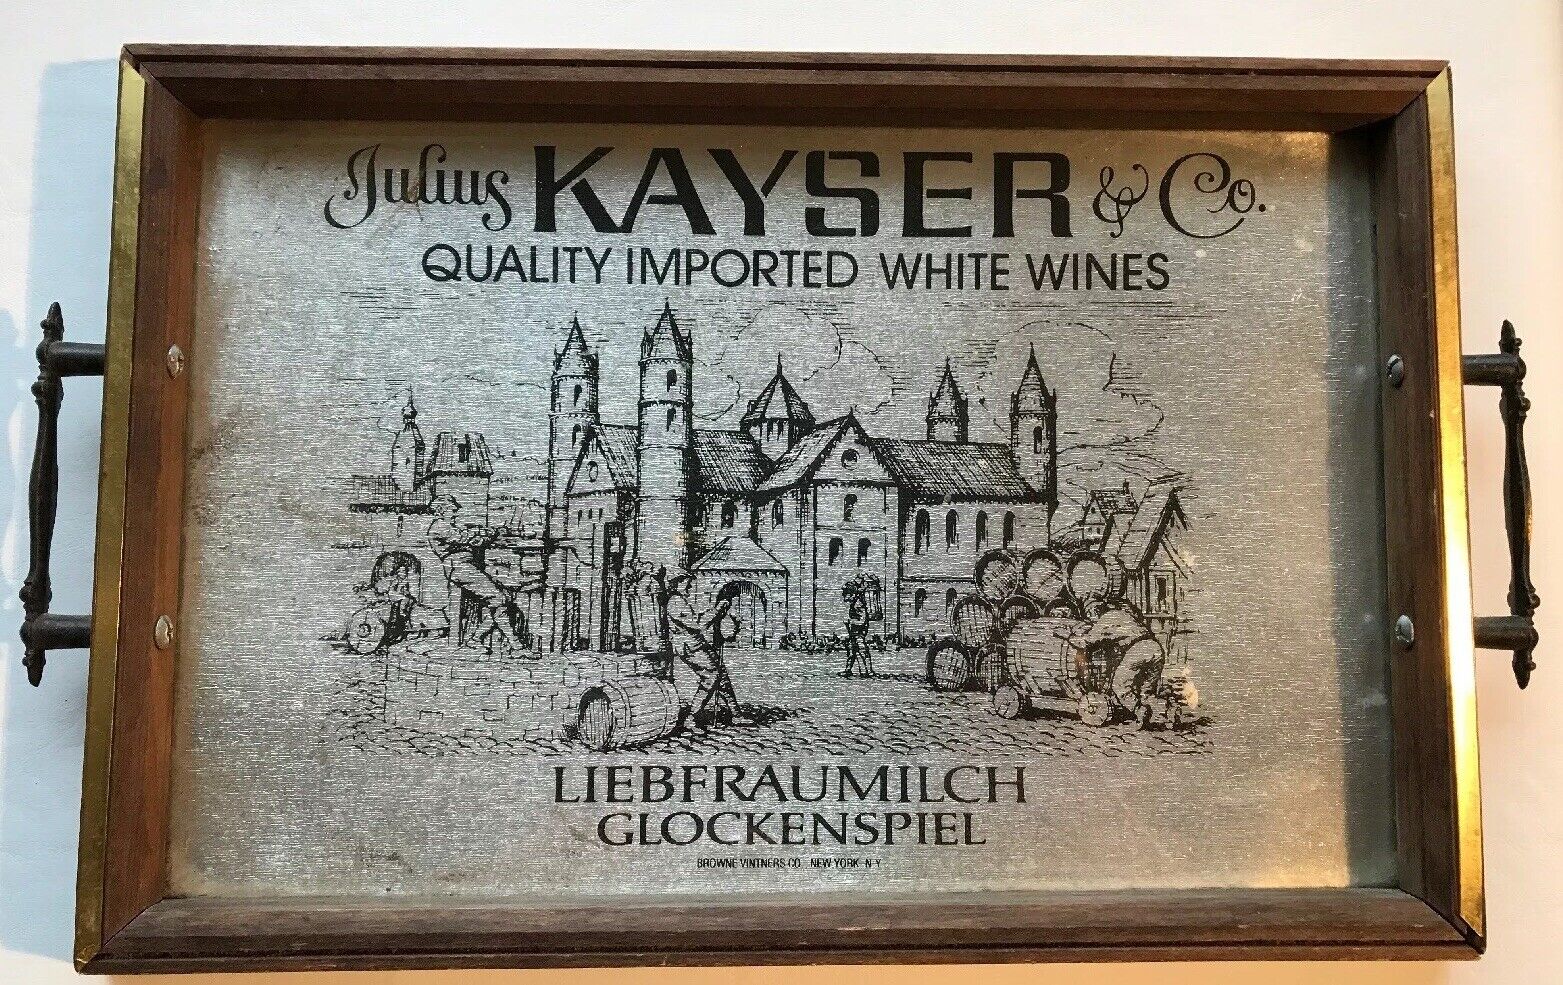 Vintage Julius Kayser & Co. Wine Bar Tavern Tray or Wall Art Hanging